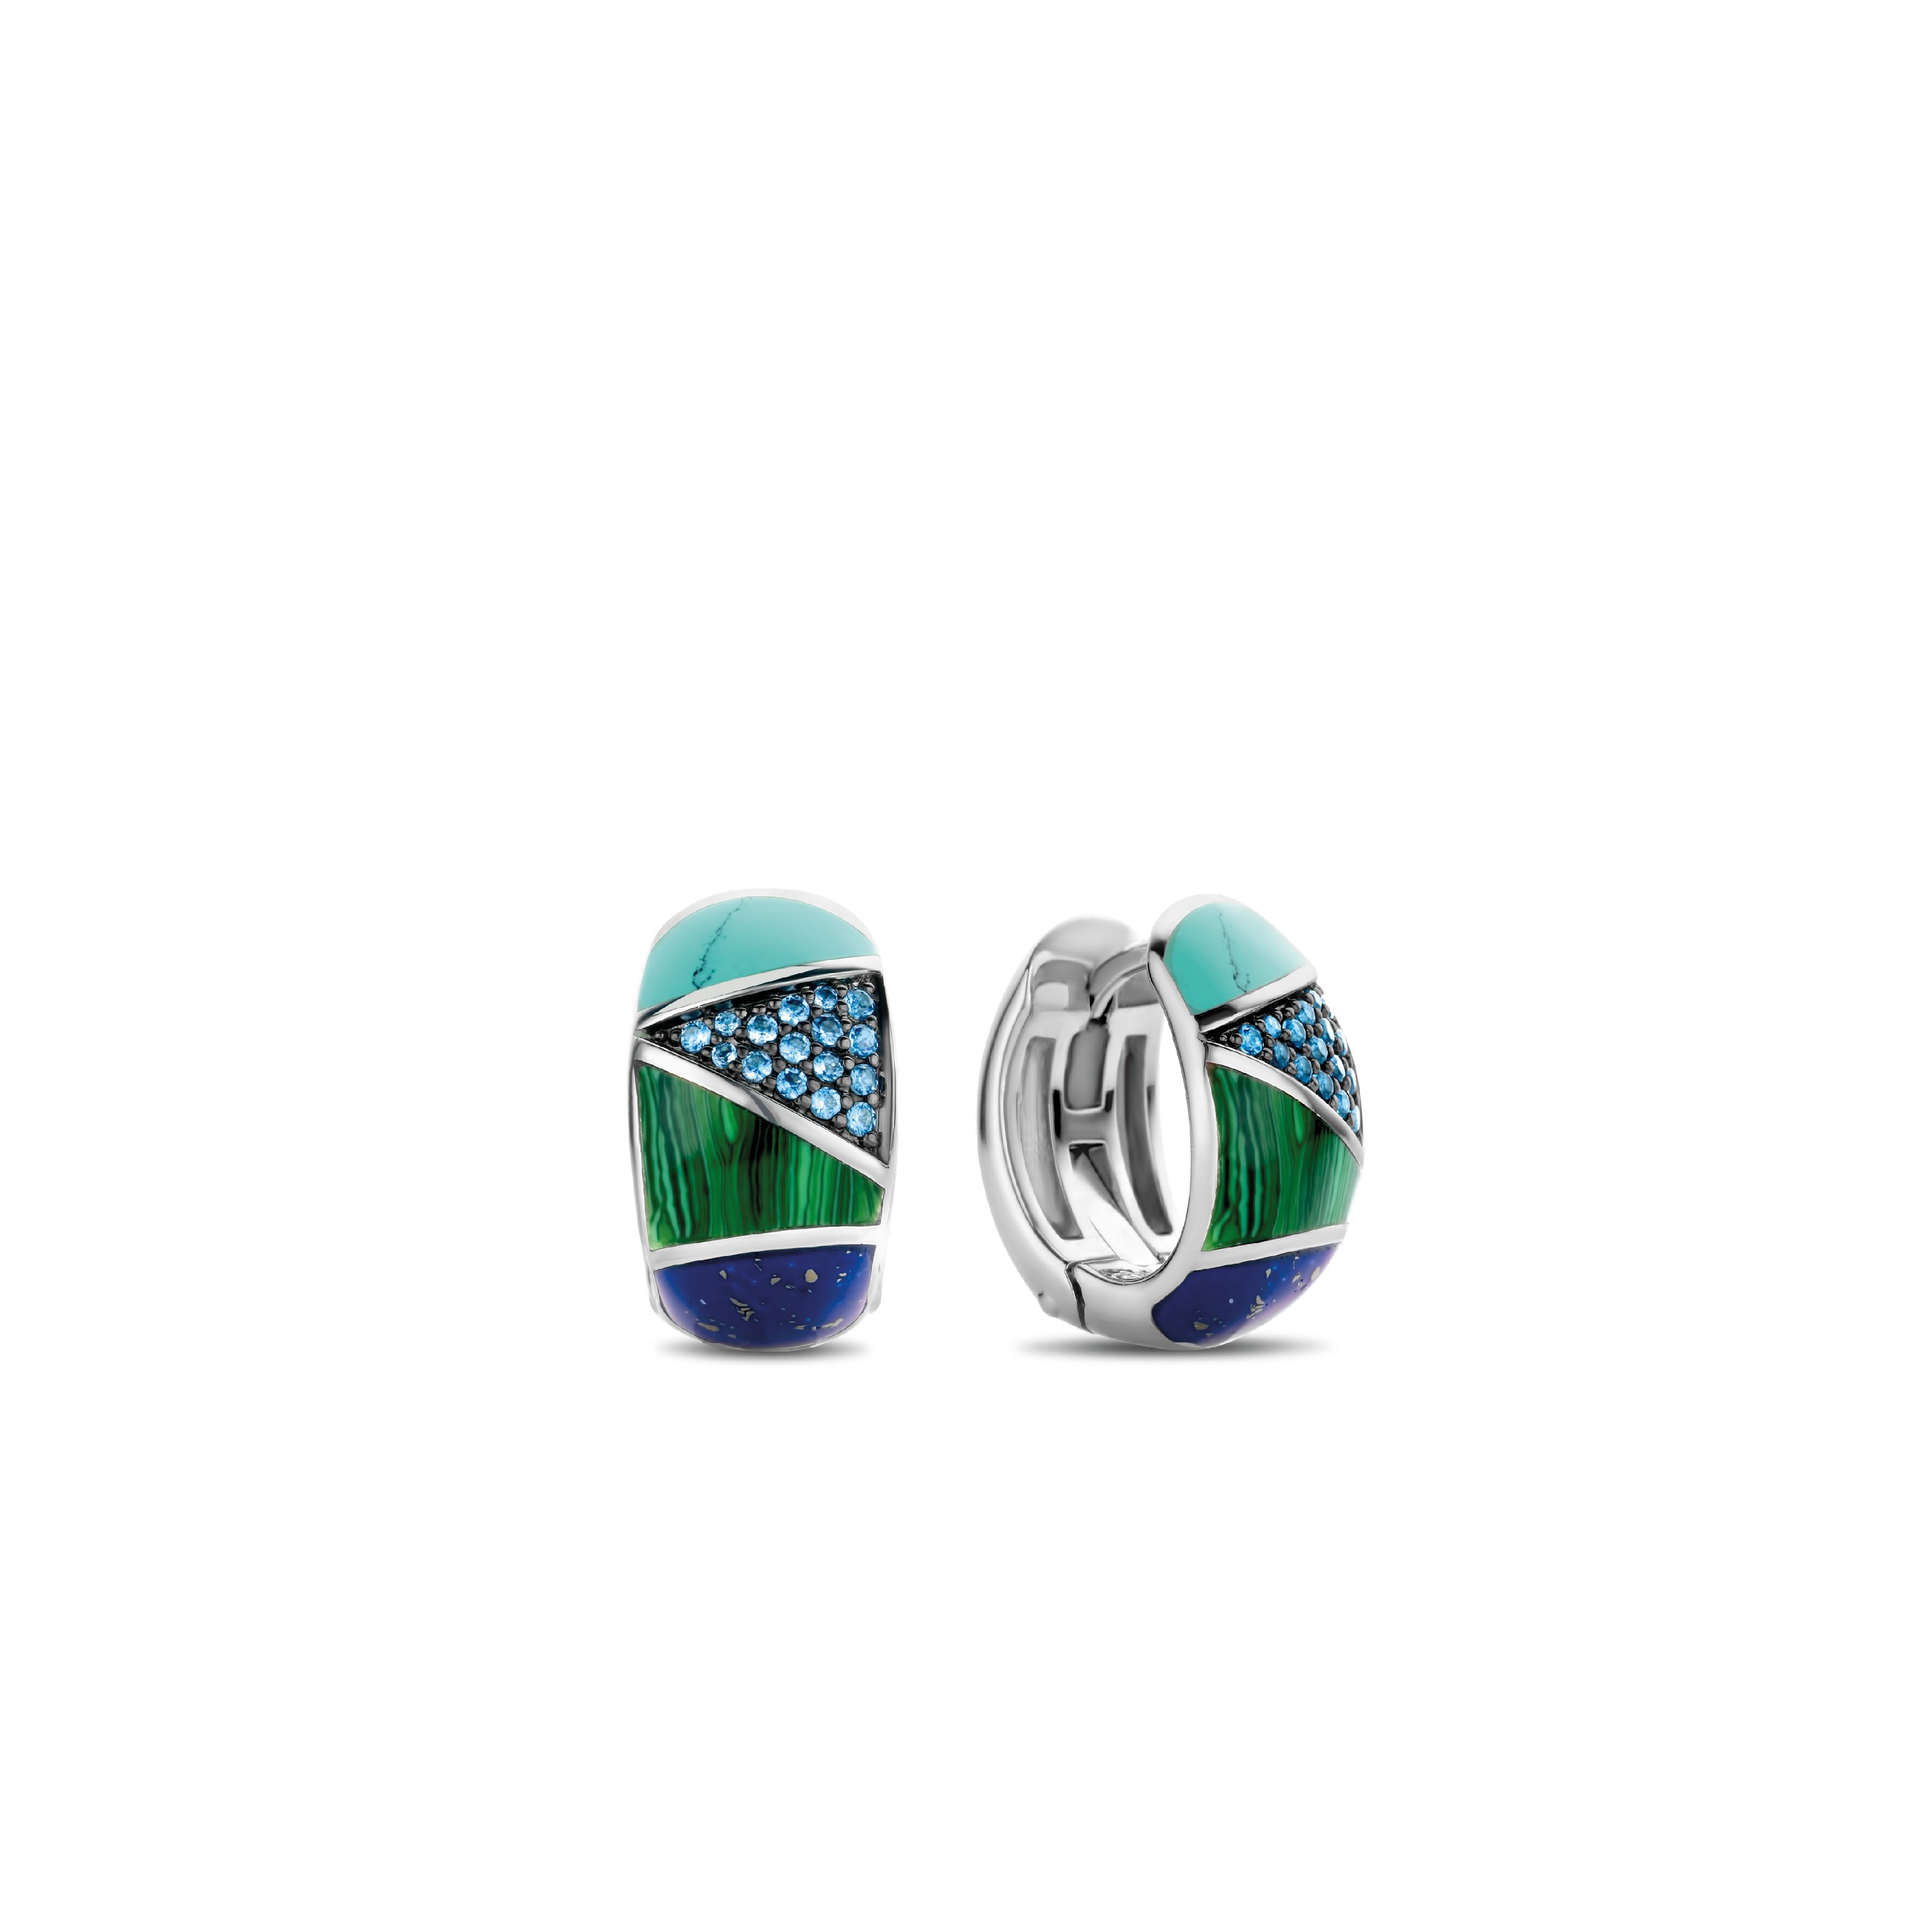 TI SENTO - Milano Earrings 7842TQ Gala Jewelers Inc. White Oak, PA